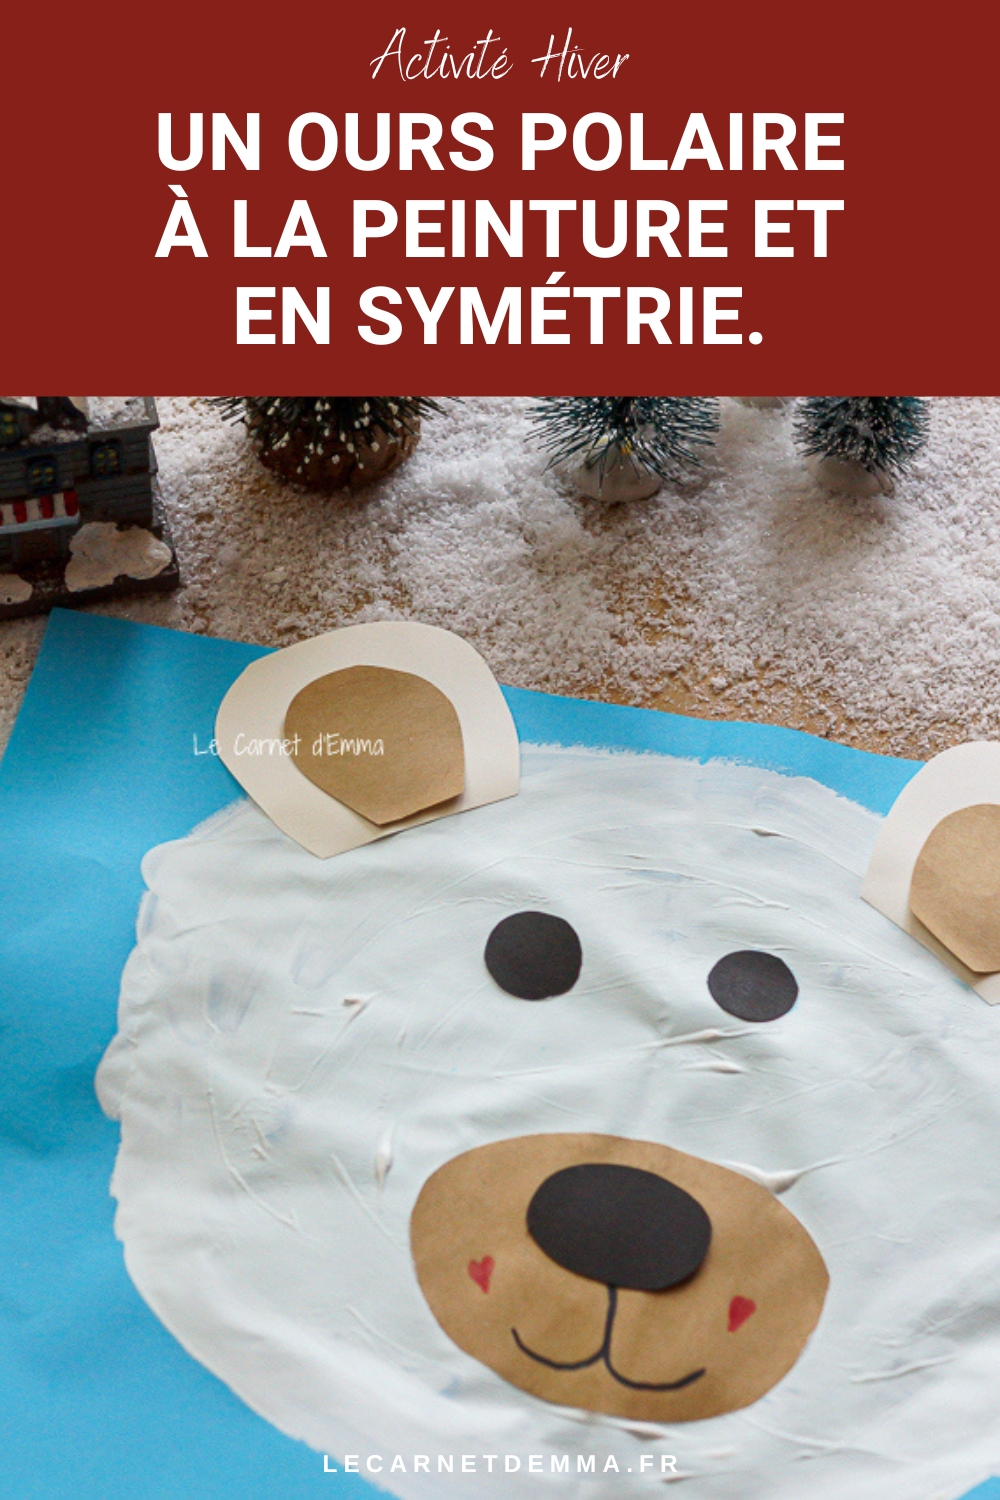 Une idée d'activité manuelle hivernale avec la création d'un ours polaire à la peinture en symétrie